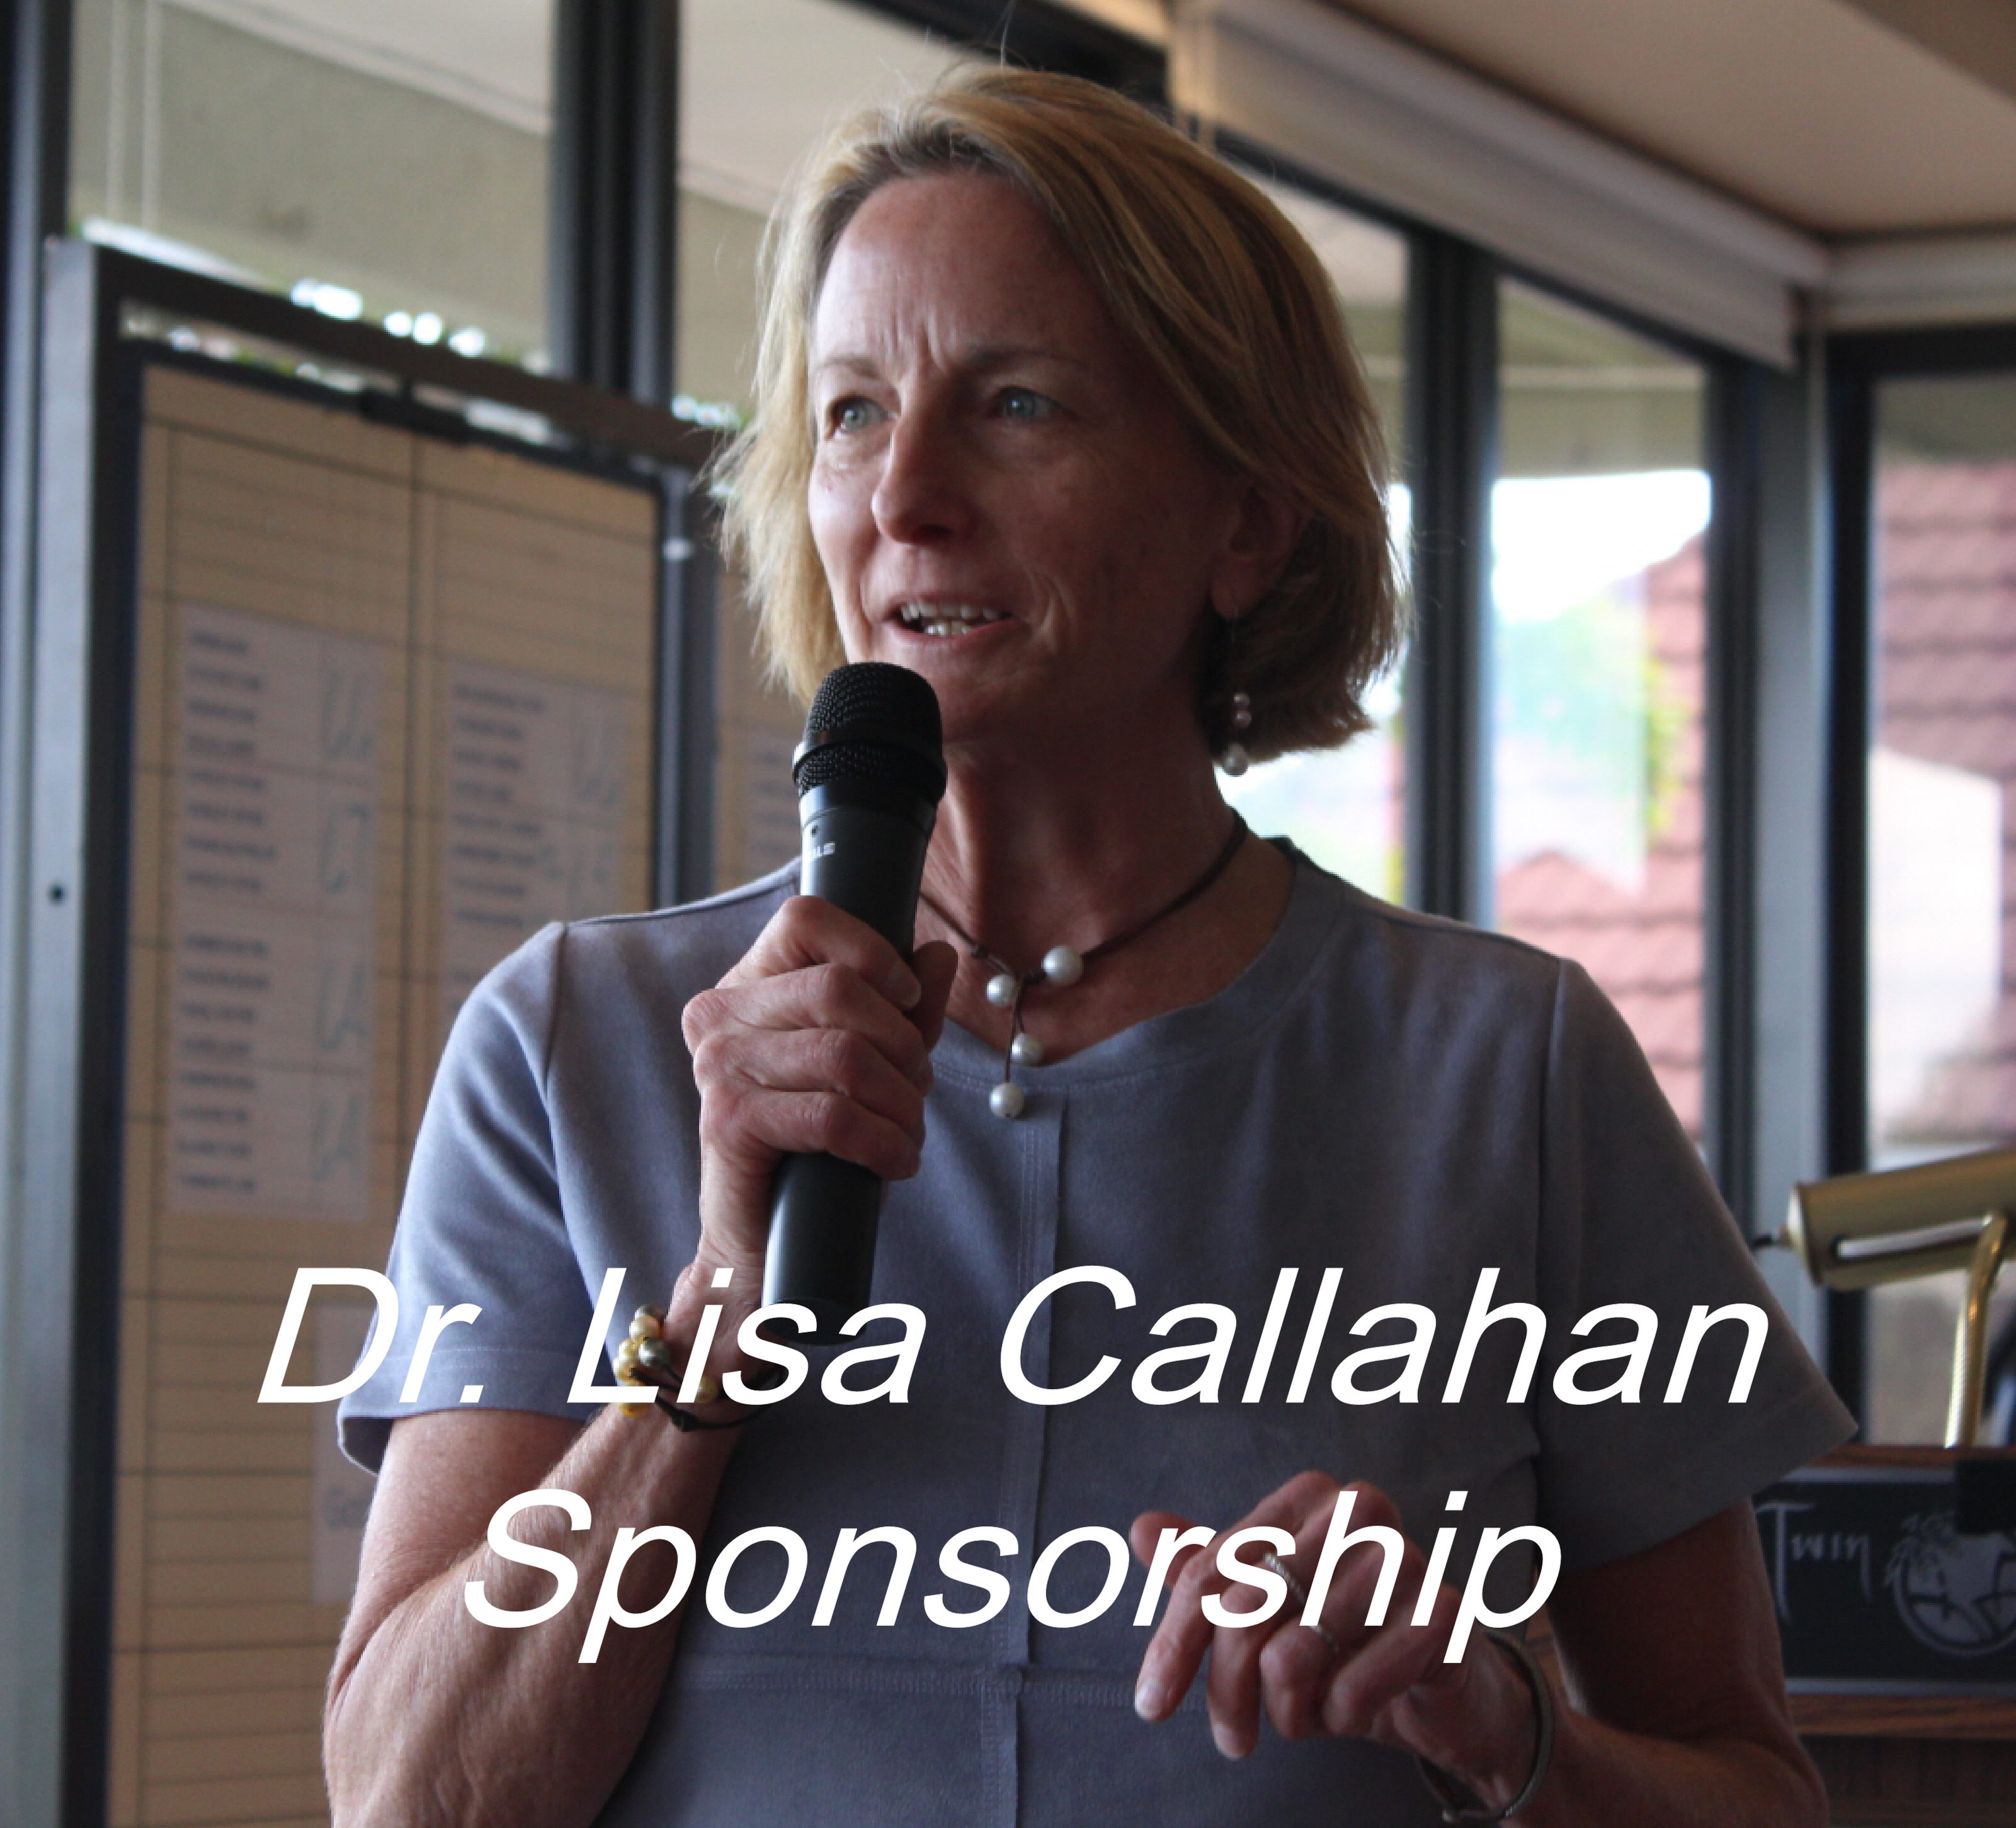 Dr. Lisa Callahan